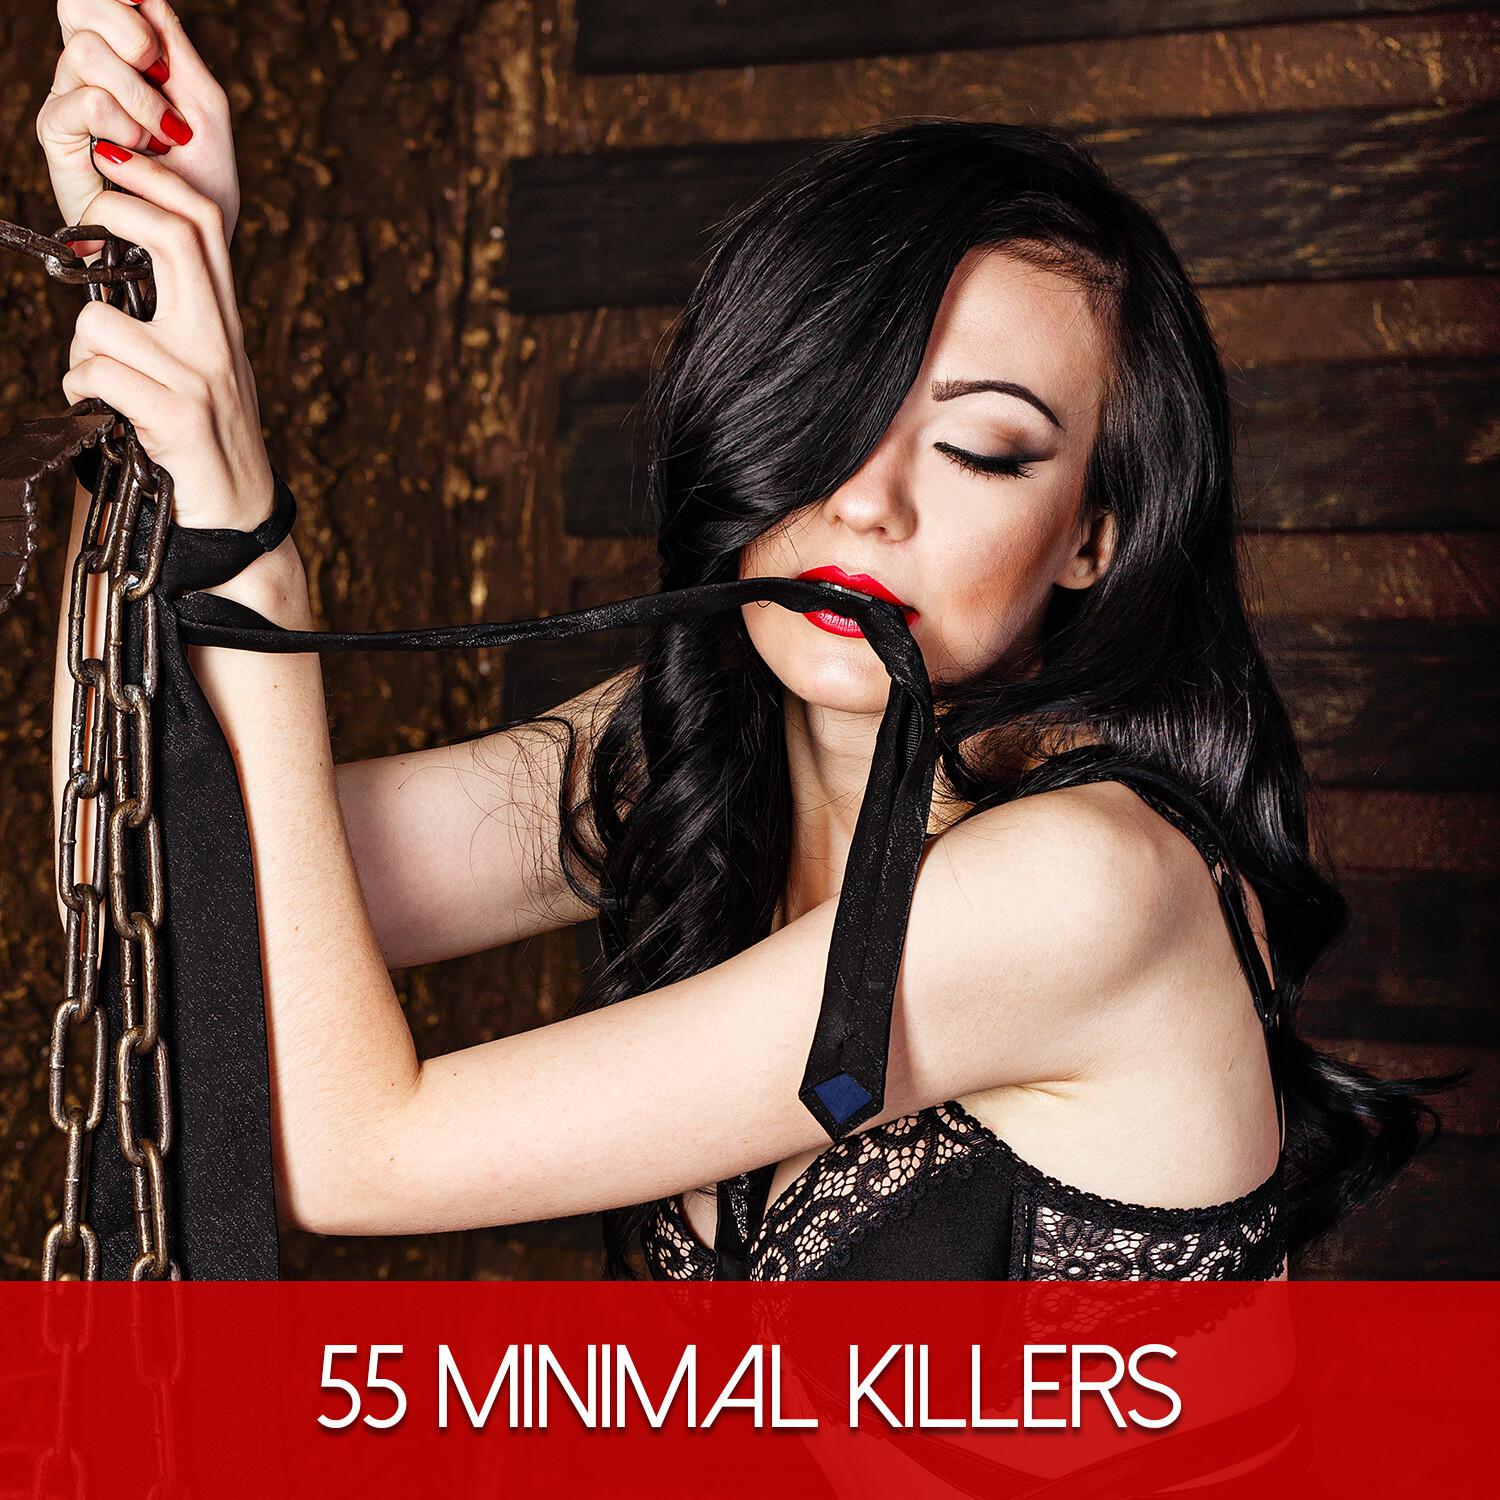 55 Minimal Killers